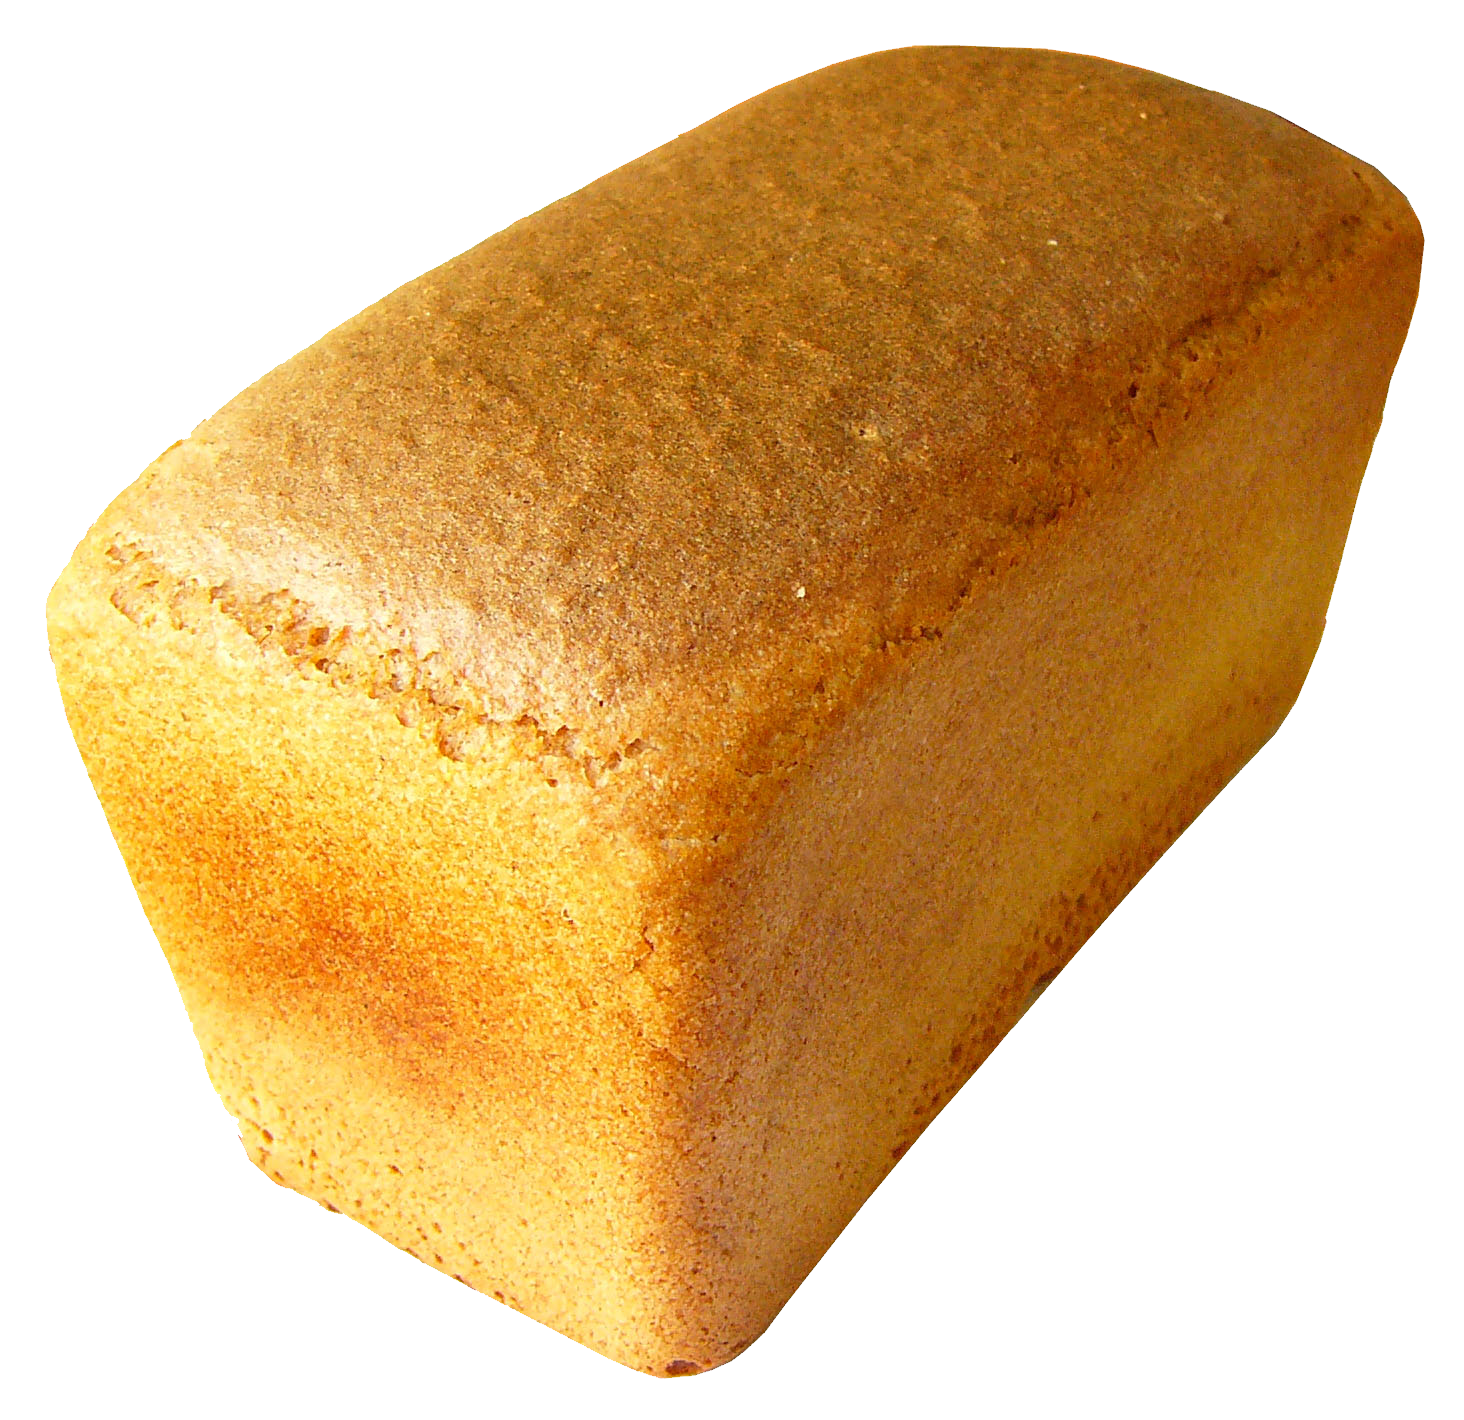 ขนมปังขาว